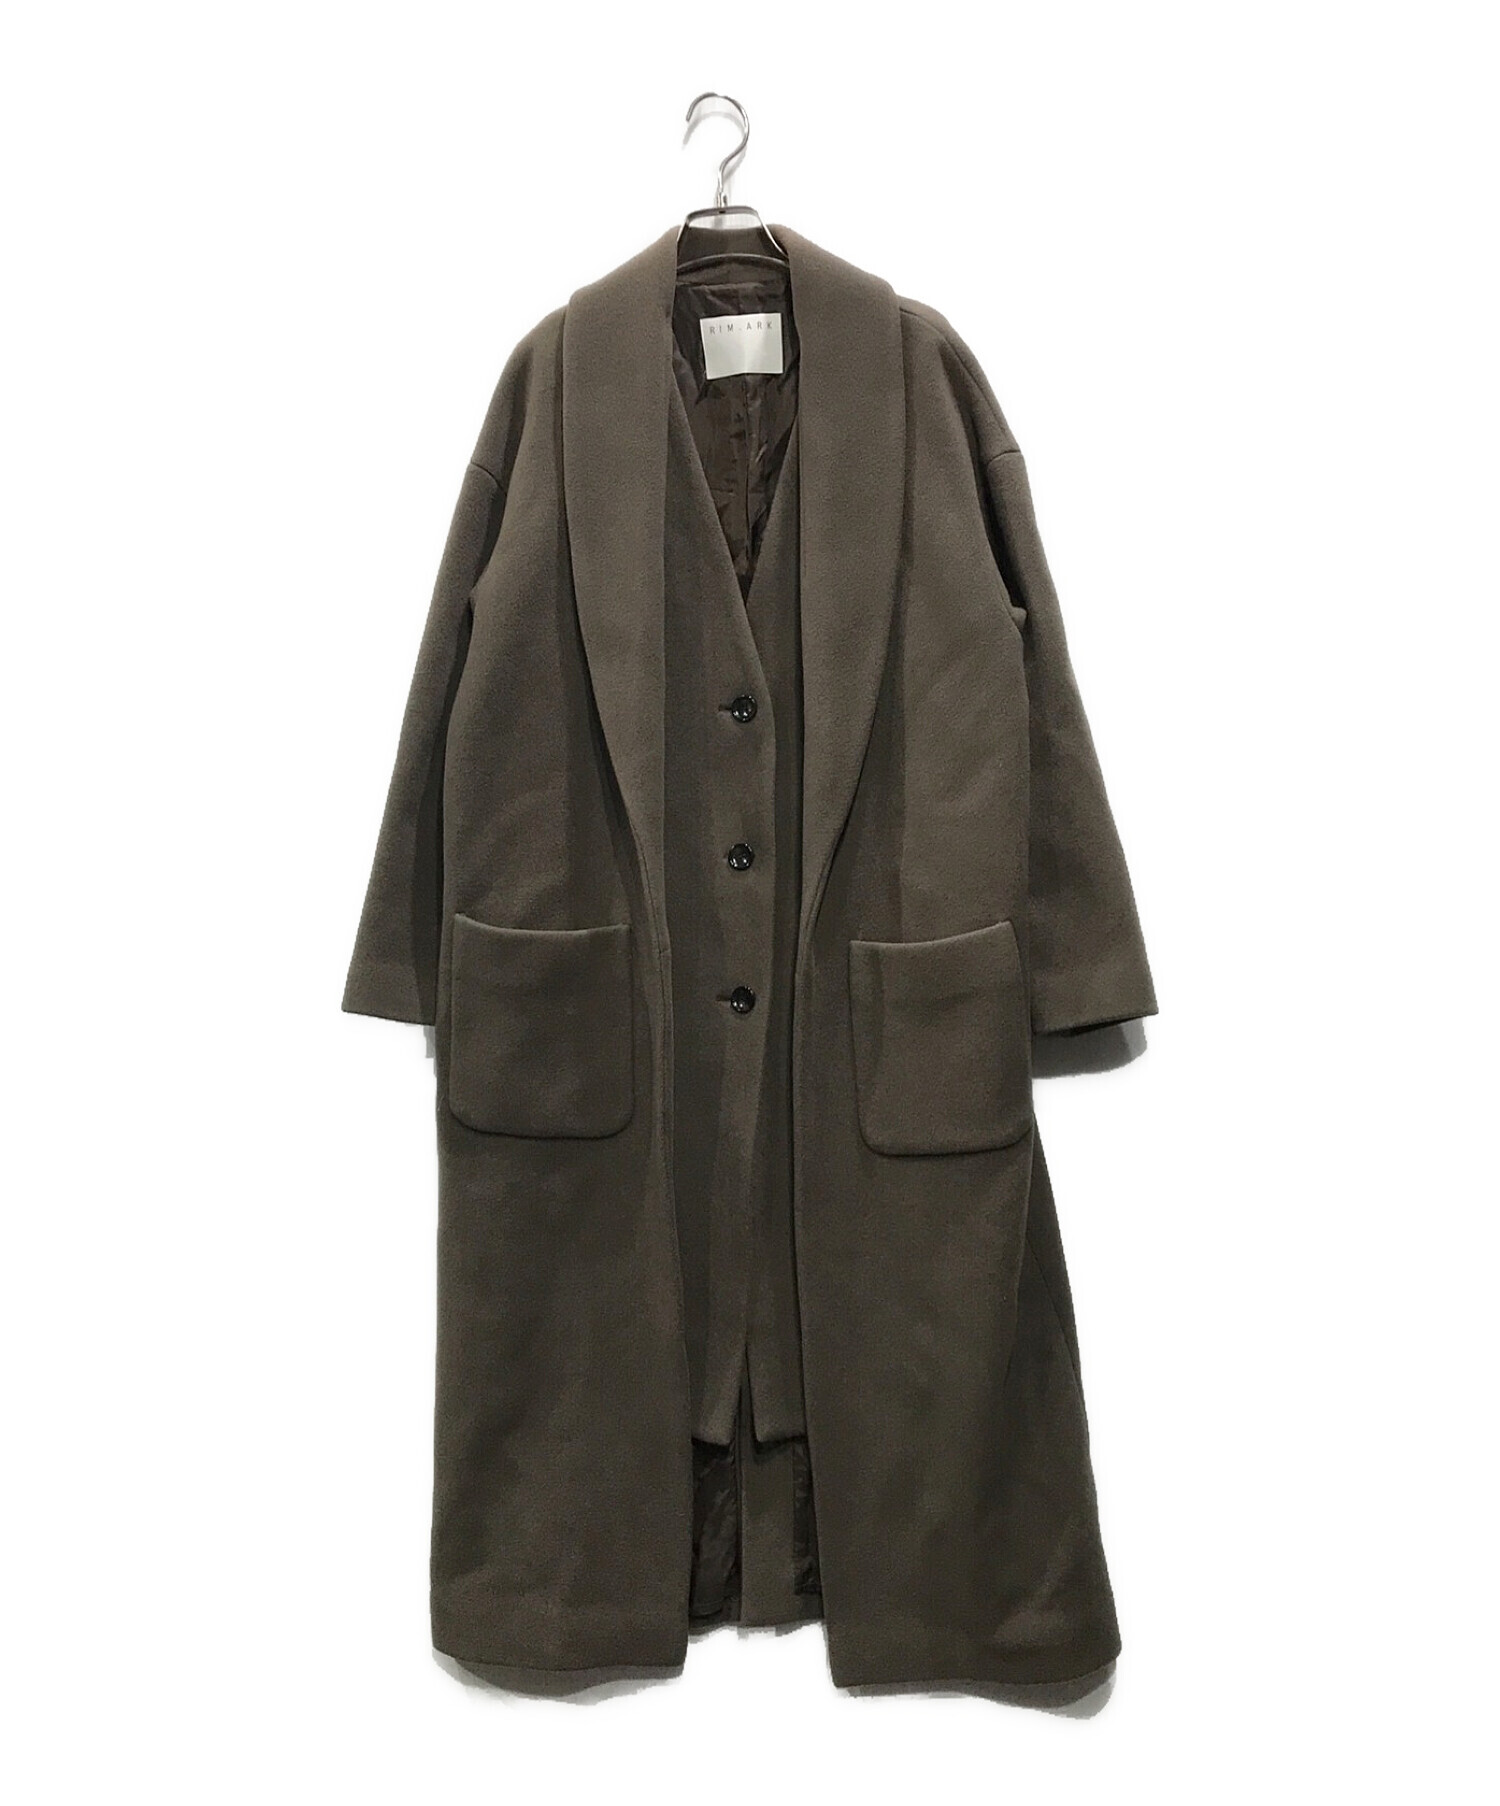 RIM.ARK (リムアーク) Layered style long coat ブラウン サイズ:38